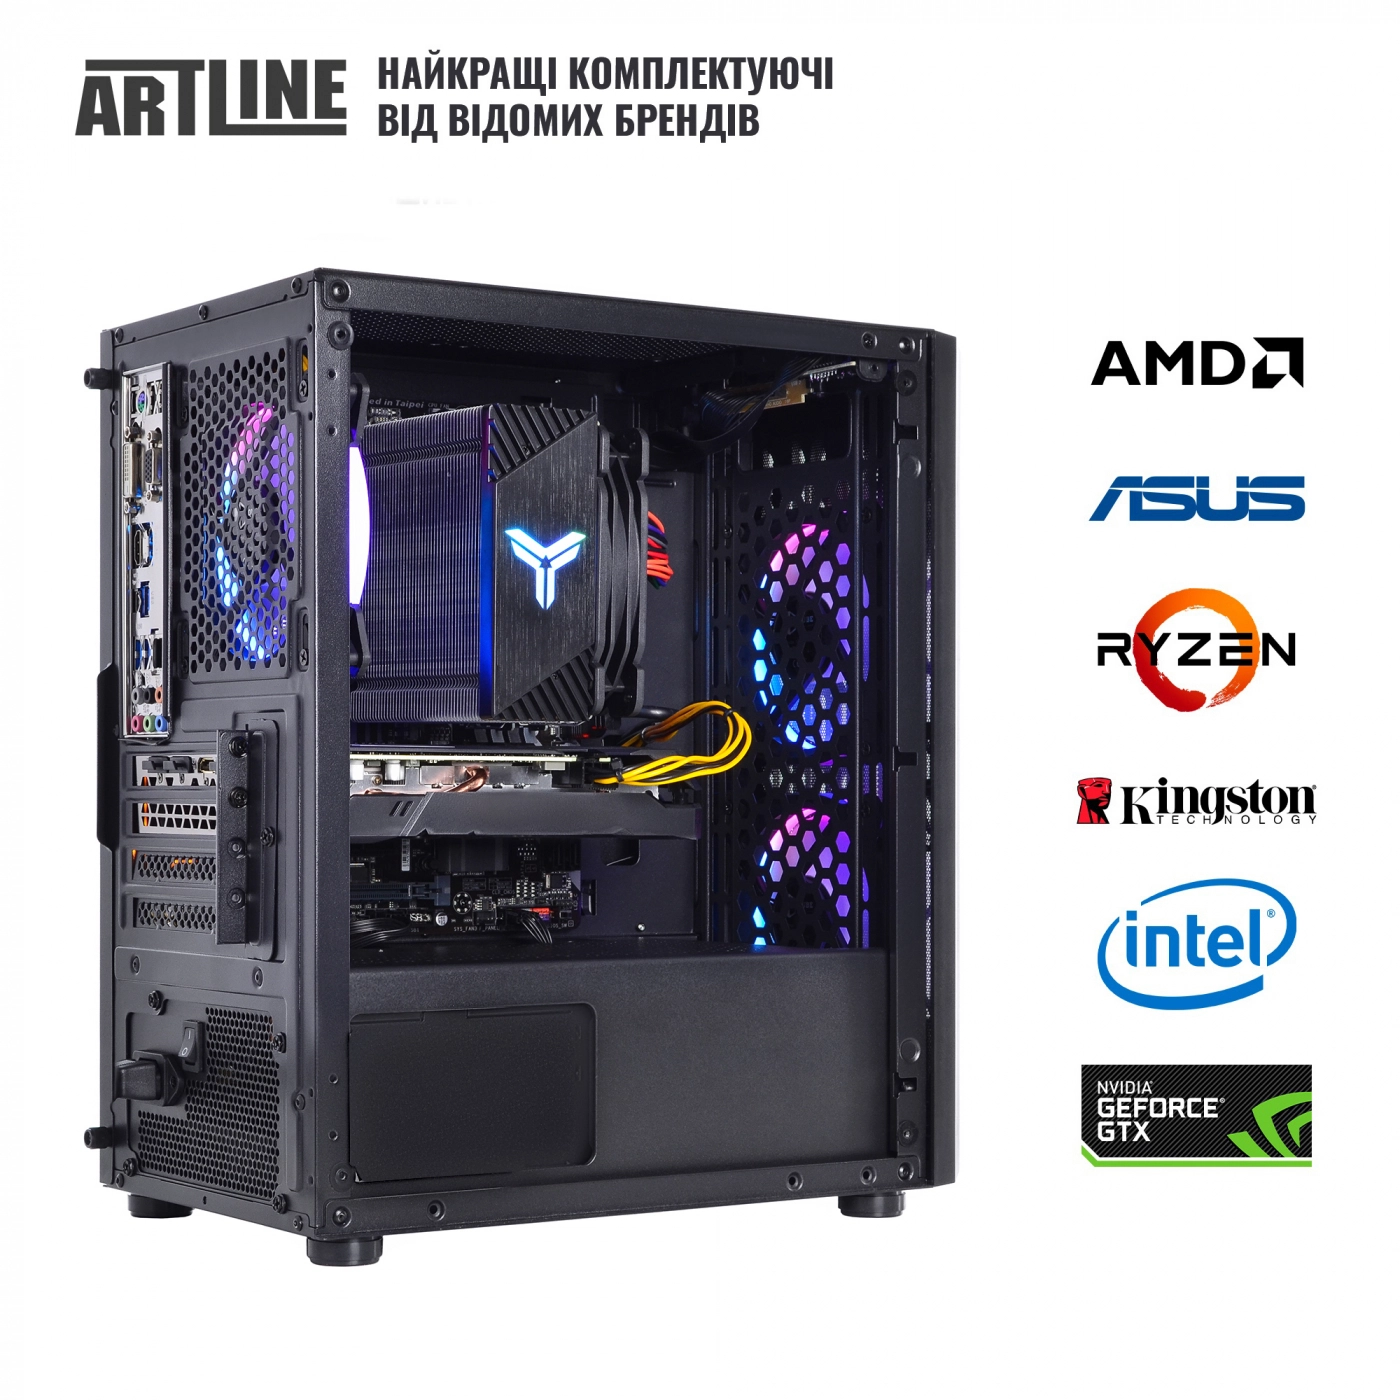 Купить Компьютер ARTLINE Gaming X71v45 - фото 7